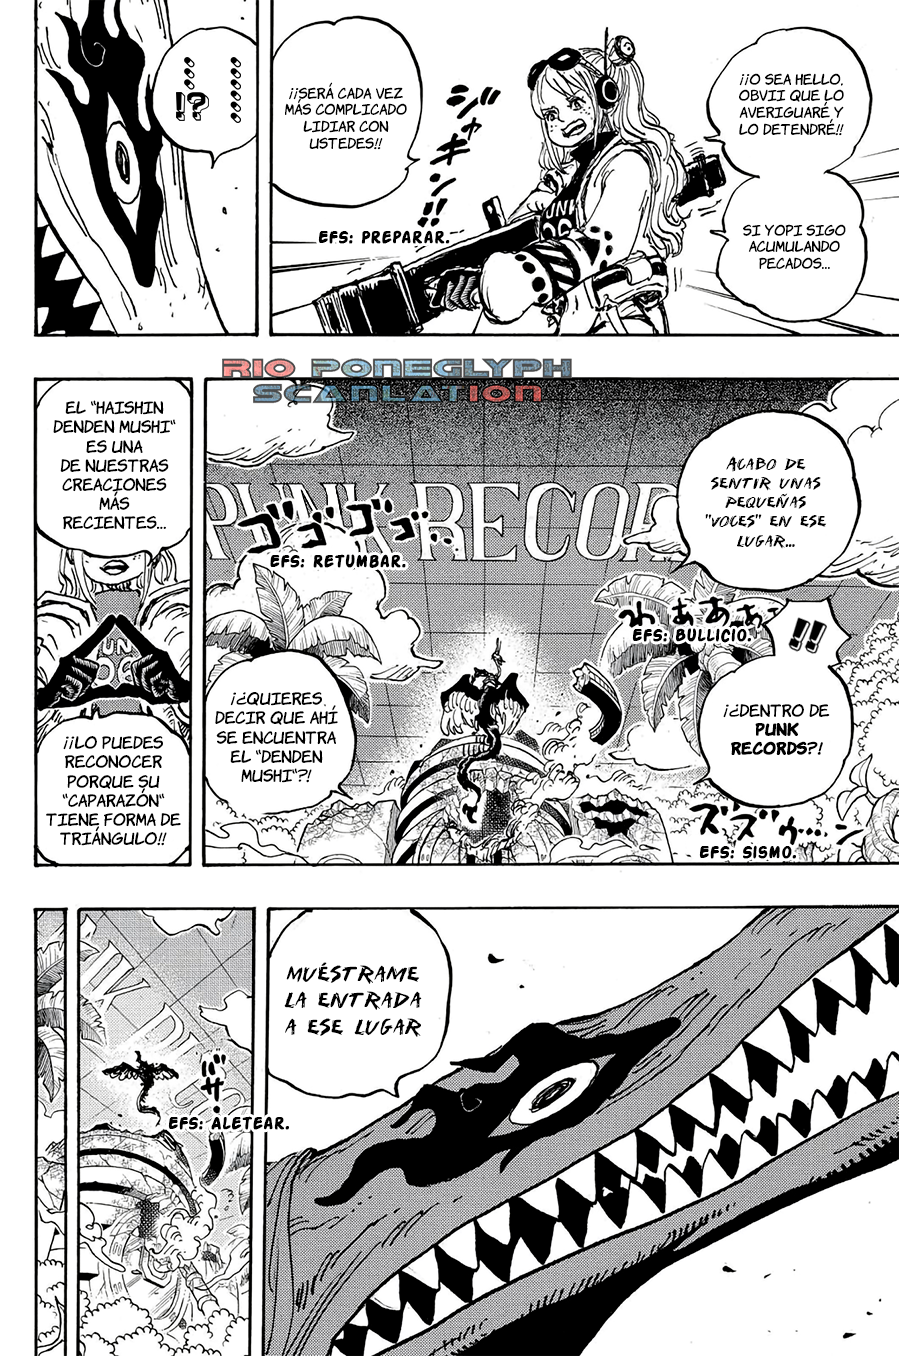 piece - One Piece Manga 1112 [Español] [Rio Poneglyph Scans] 07-2